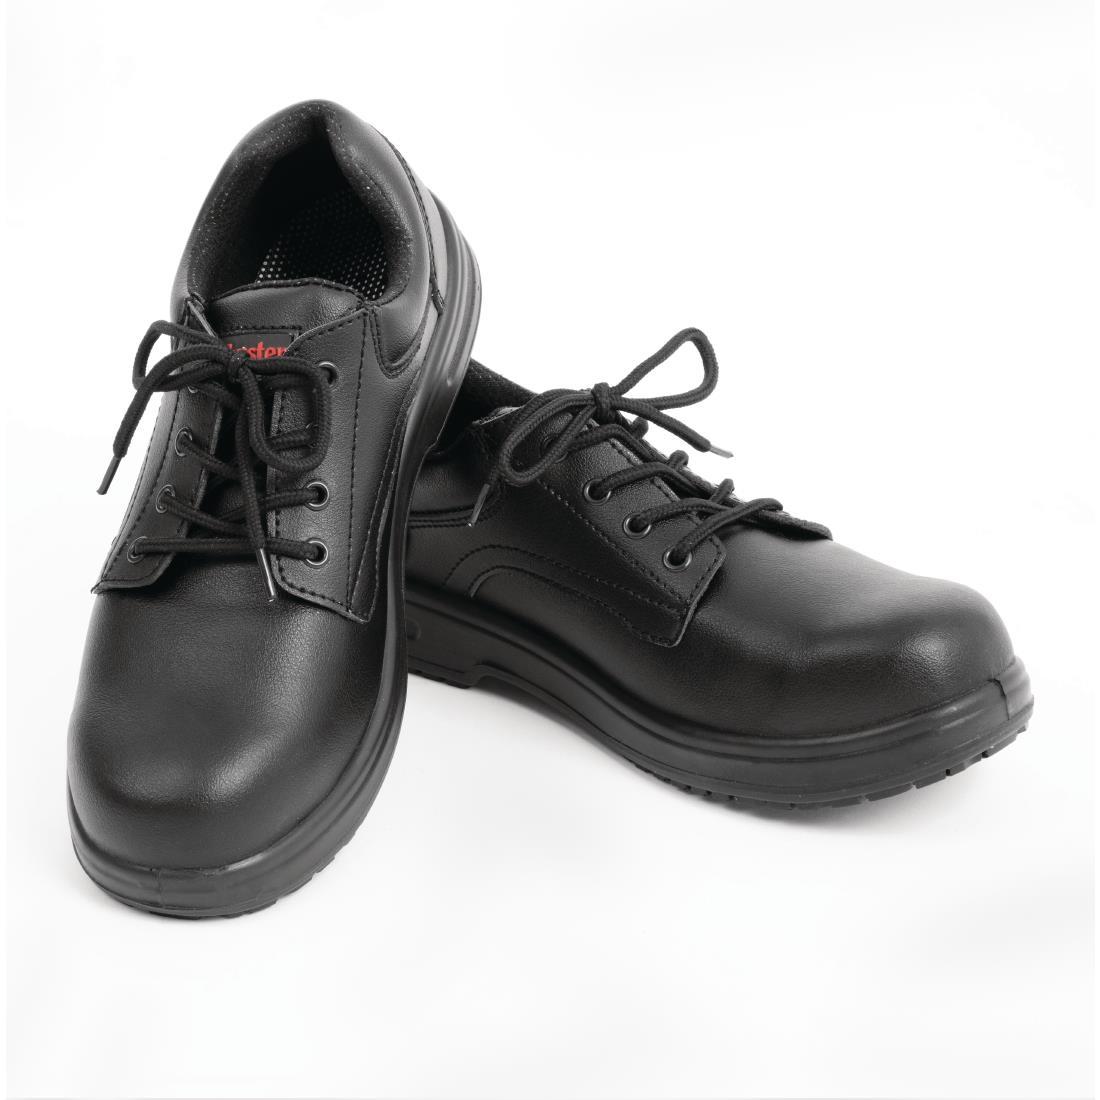 Slipbuster Basic Toe Cap Safety Shoes Black 42 - BB497-42  - 4